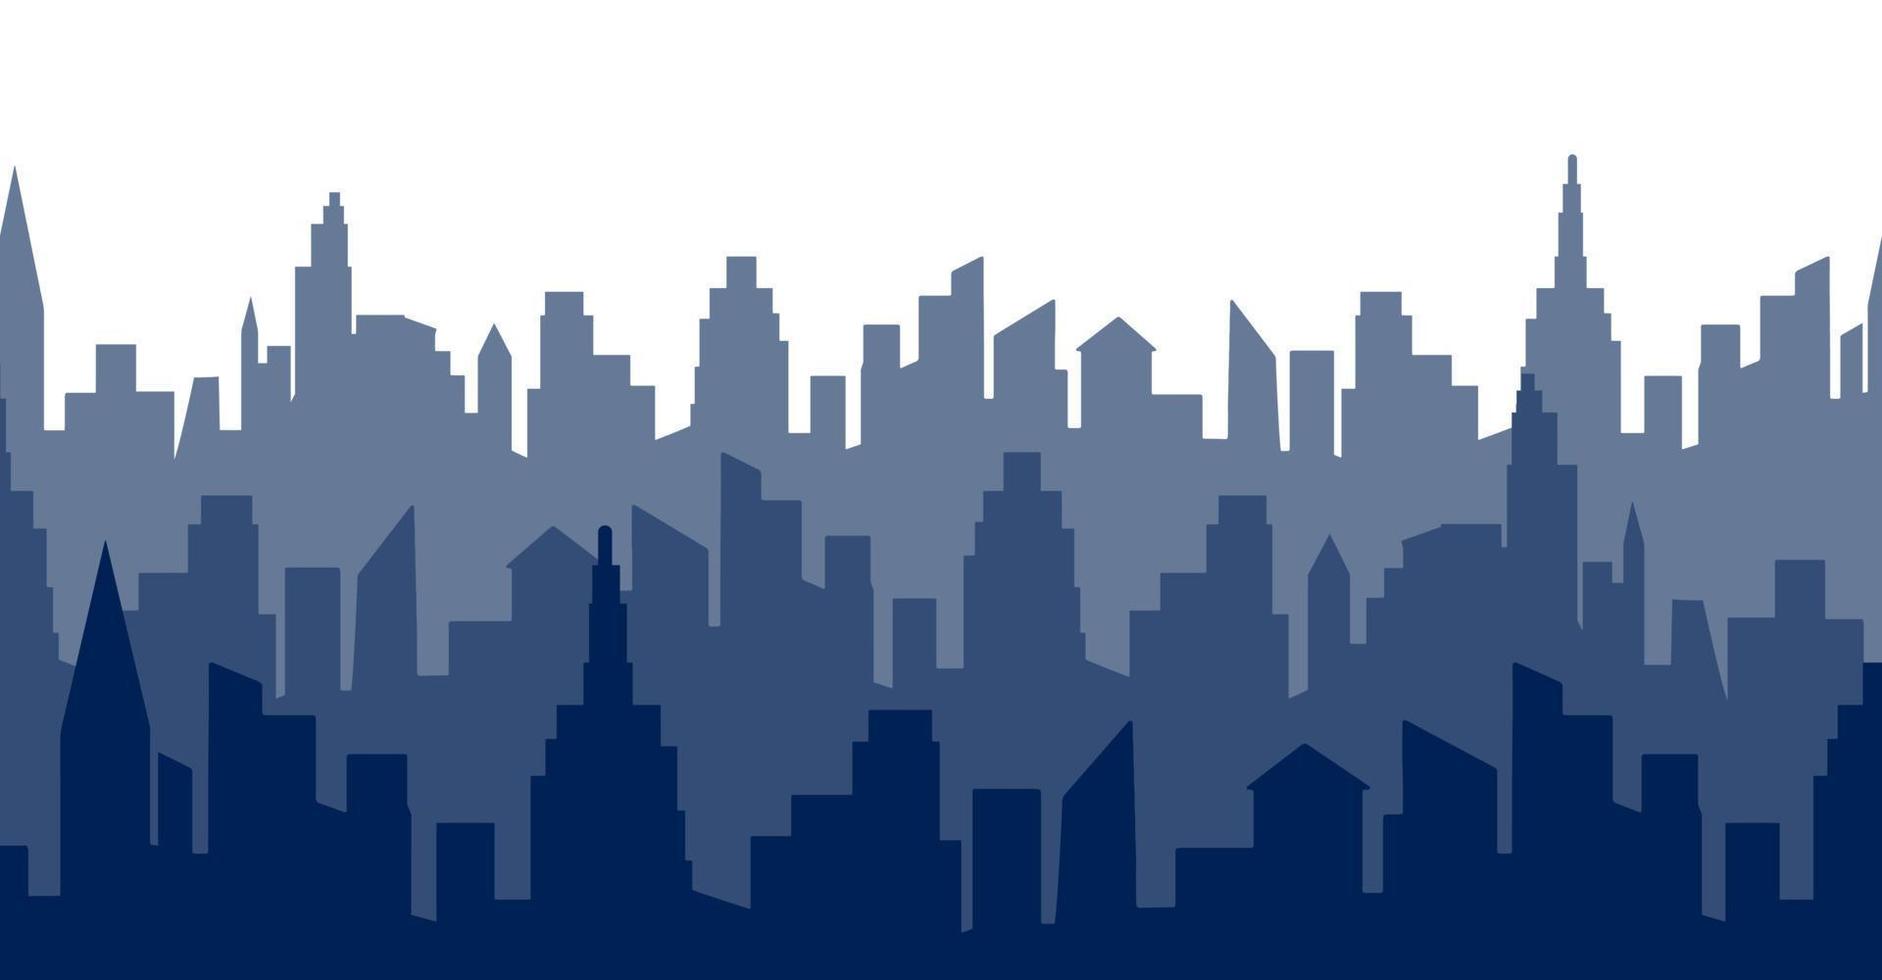 vue panoramique de la ville, illustration vectorielle graphique plat. forme d'ombre isolée simple, impression abstraite de bordure. silhouette de bâtiment urbain. vecteur